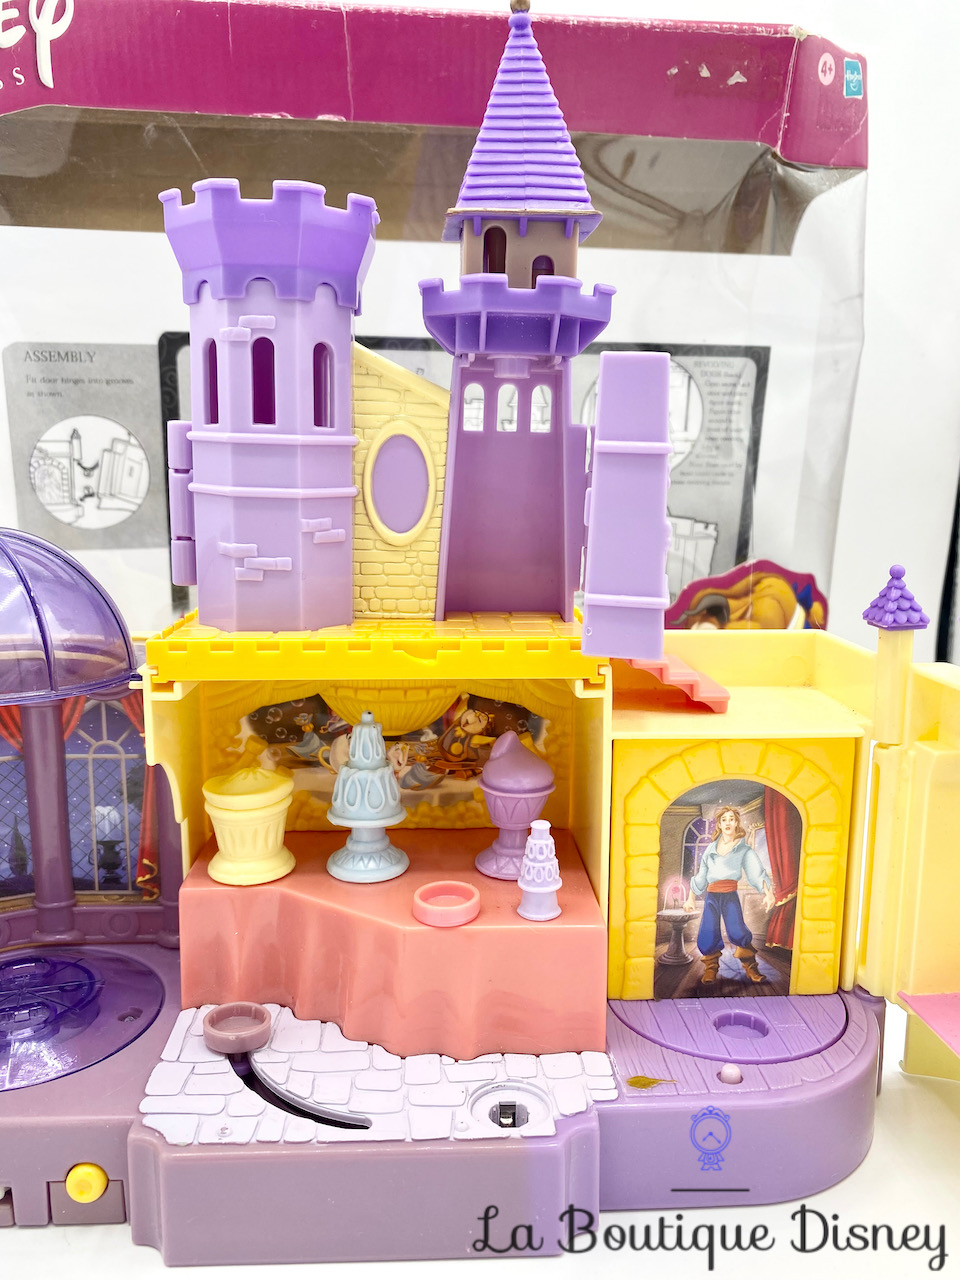 jeu-style-polly-pocket-le-chateau-de-la-belle-et-la-bete-disney-princess-glowing-mirror-castle-vintage-2002-7